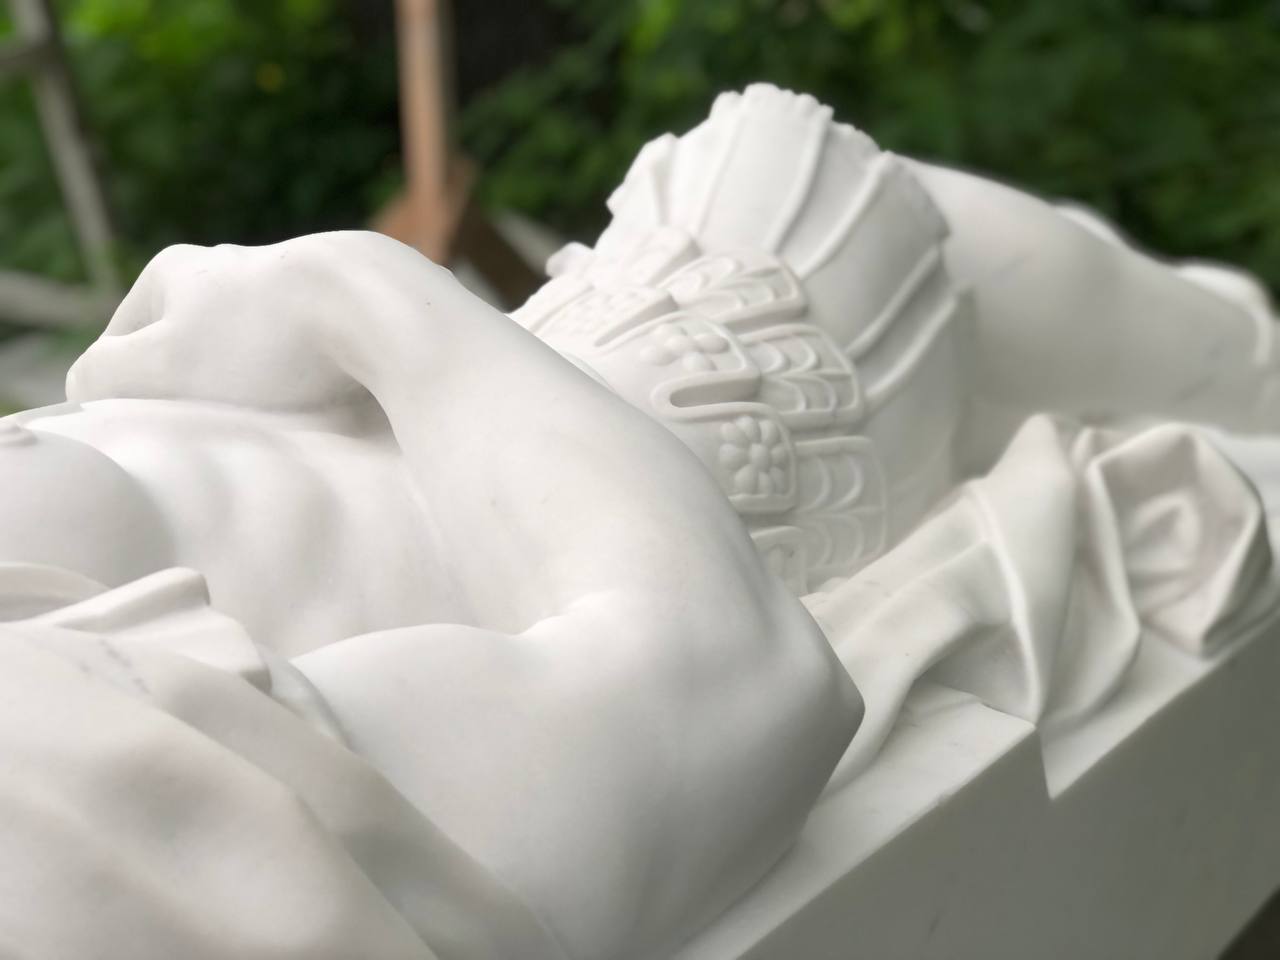 Sculpture of St. Sebastian in white marble